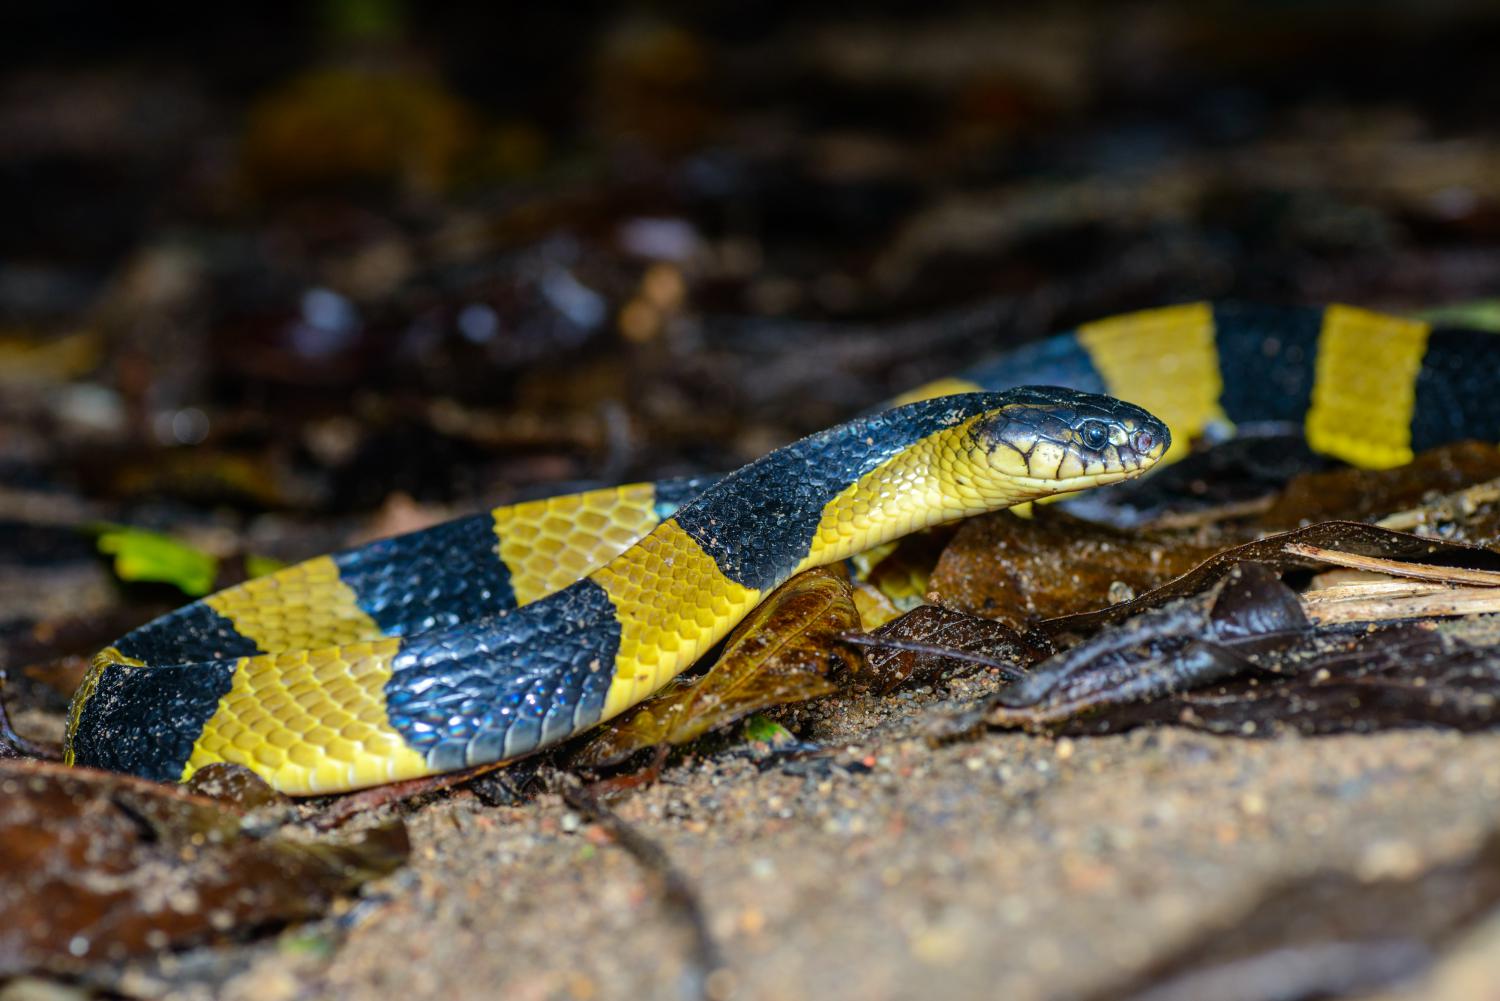 Sakhamuti snake in english